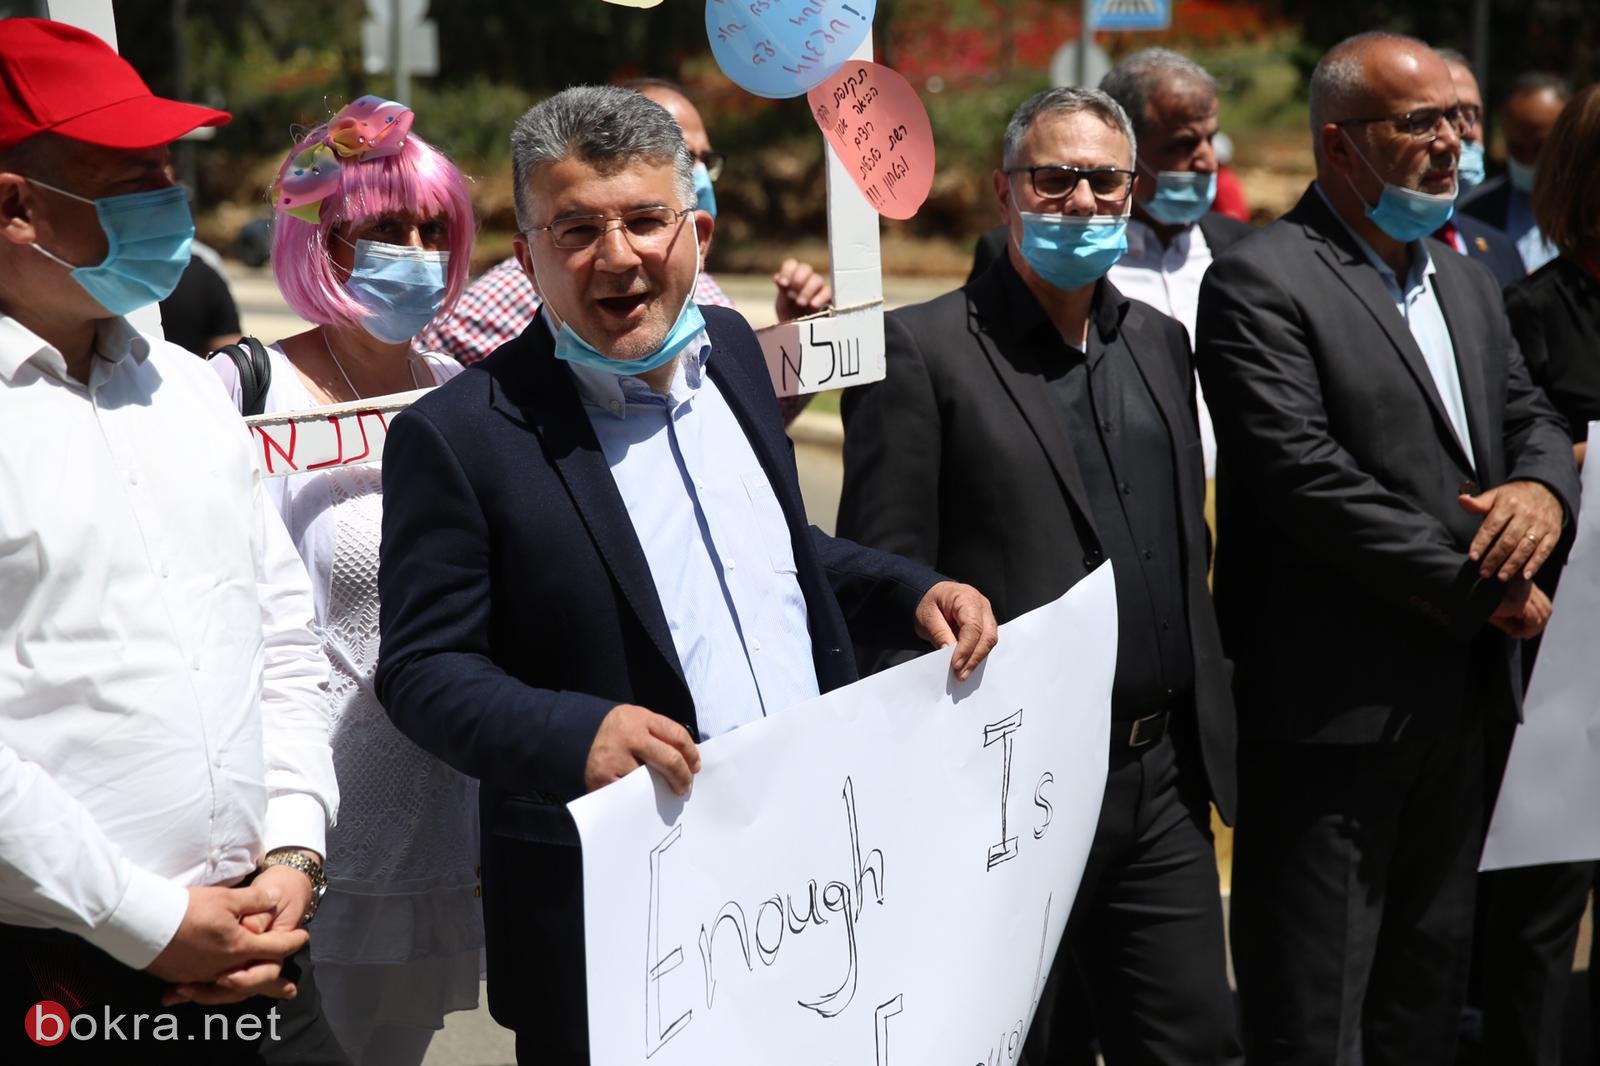 رؤساء السلطات المحلية وأعضاء الكنيست العرب يتظاهرون في القدس للمطالبة بالميزانيات-8